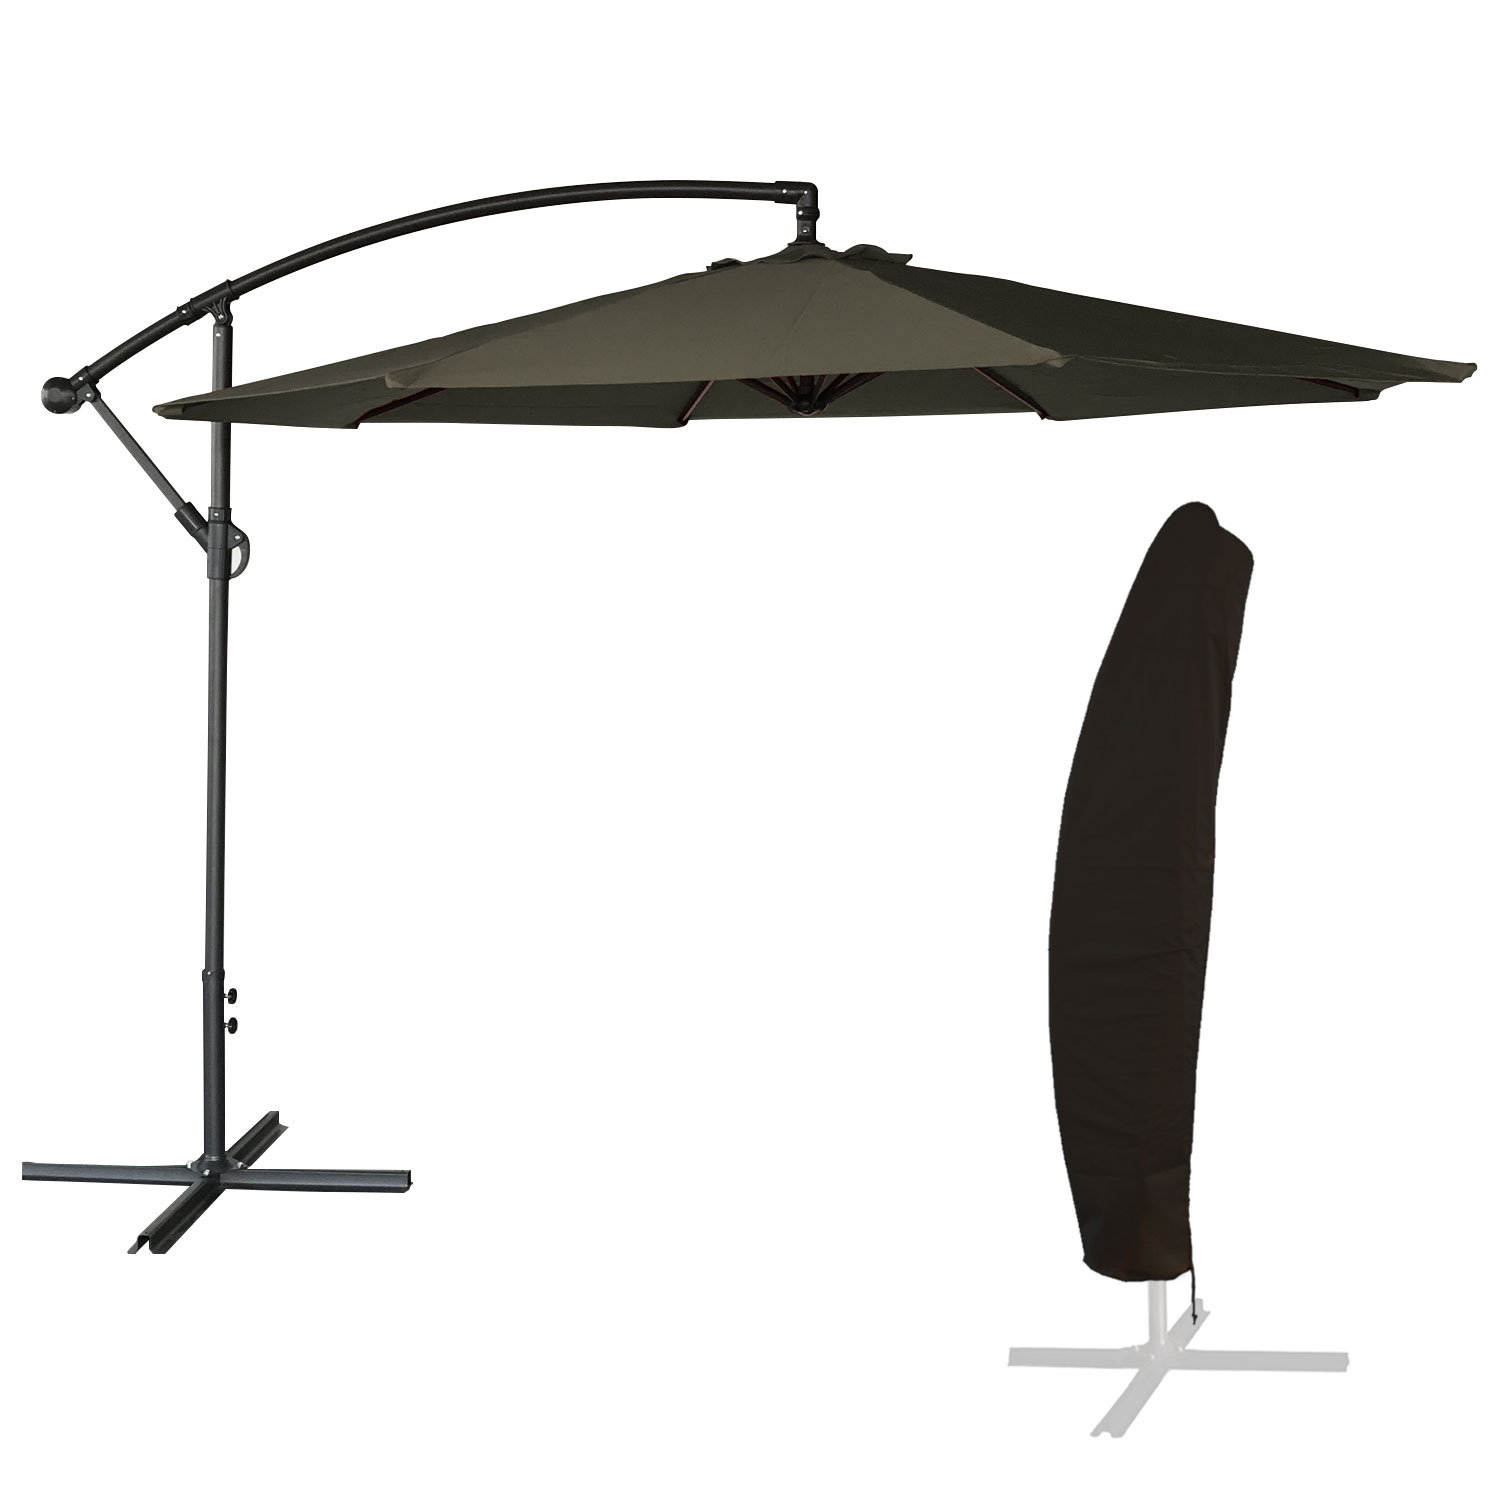 OAHU ombrellone rotondo diametro 3,50m grigio + copertura